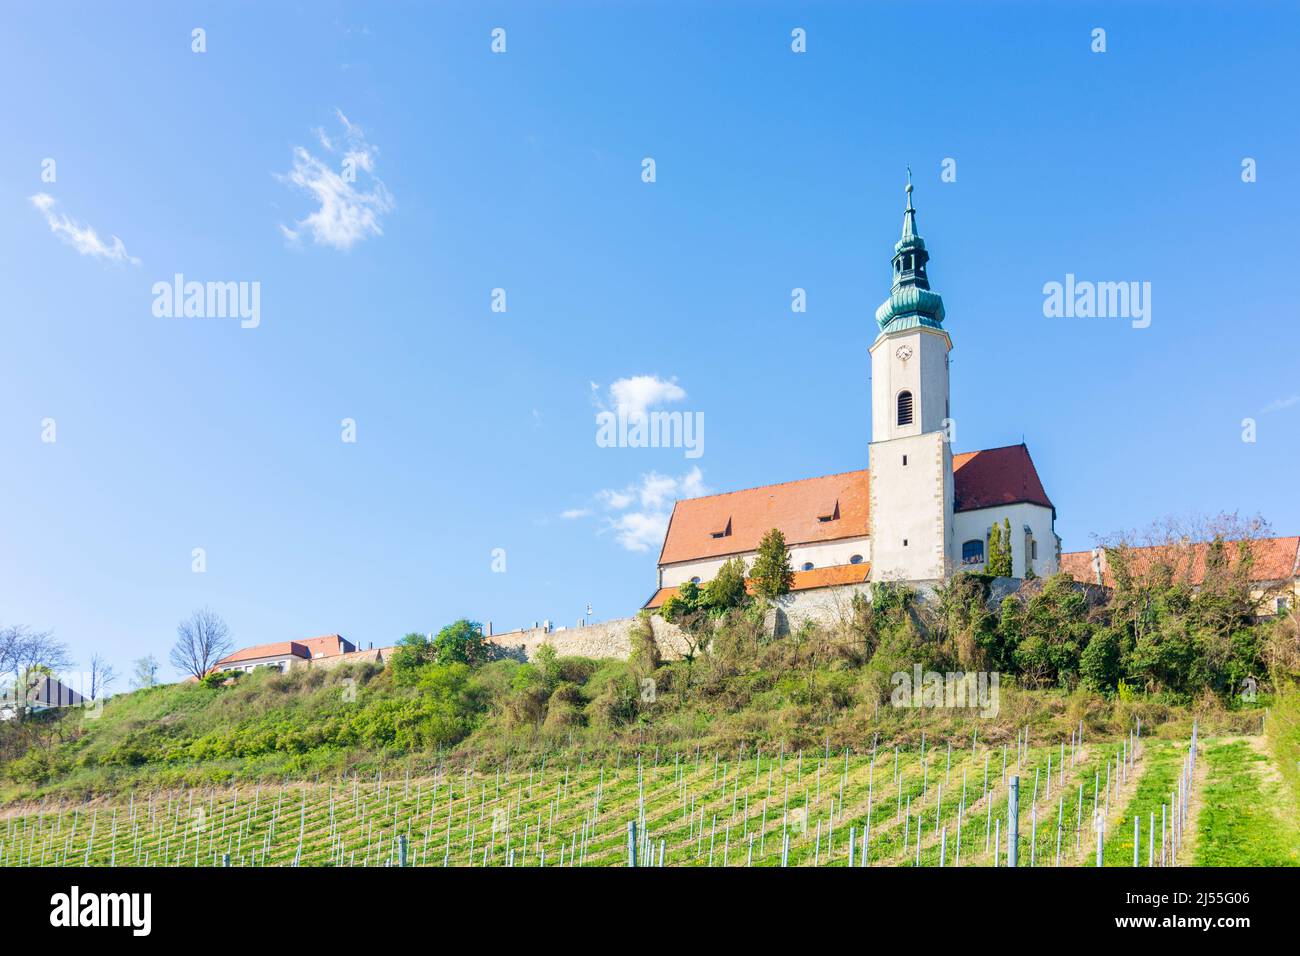 Hausleiten: church Hausleiten, vineyard in Donau, Niederösterreich, Lower Austria, Austria Stock Photo